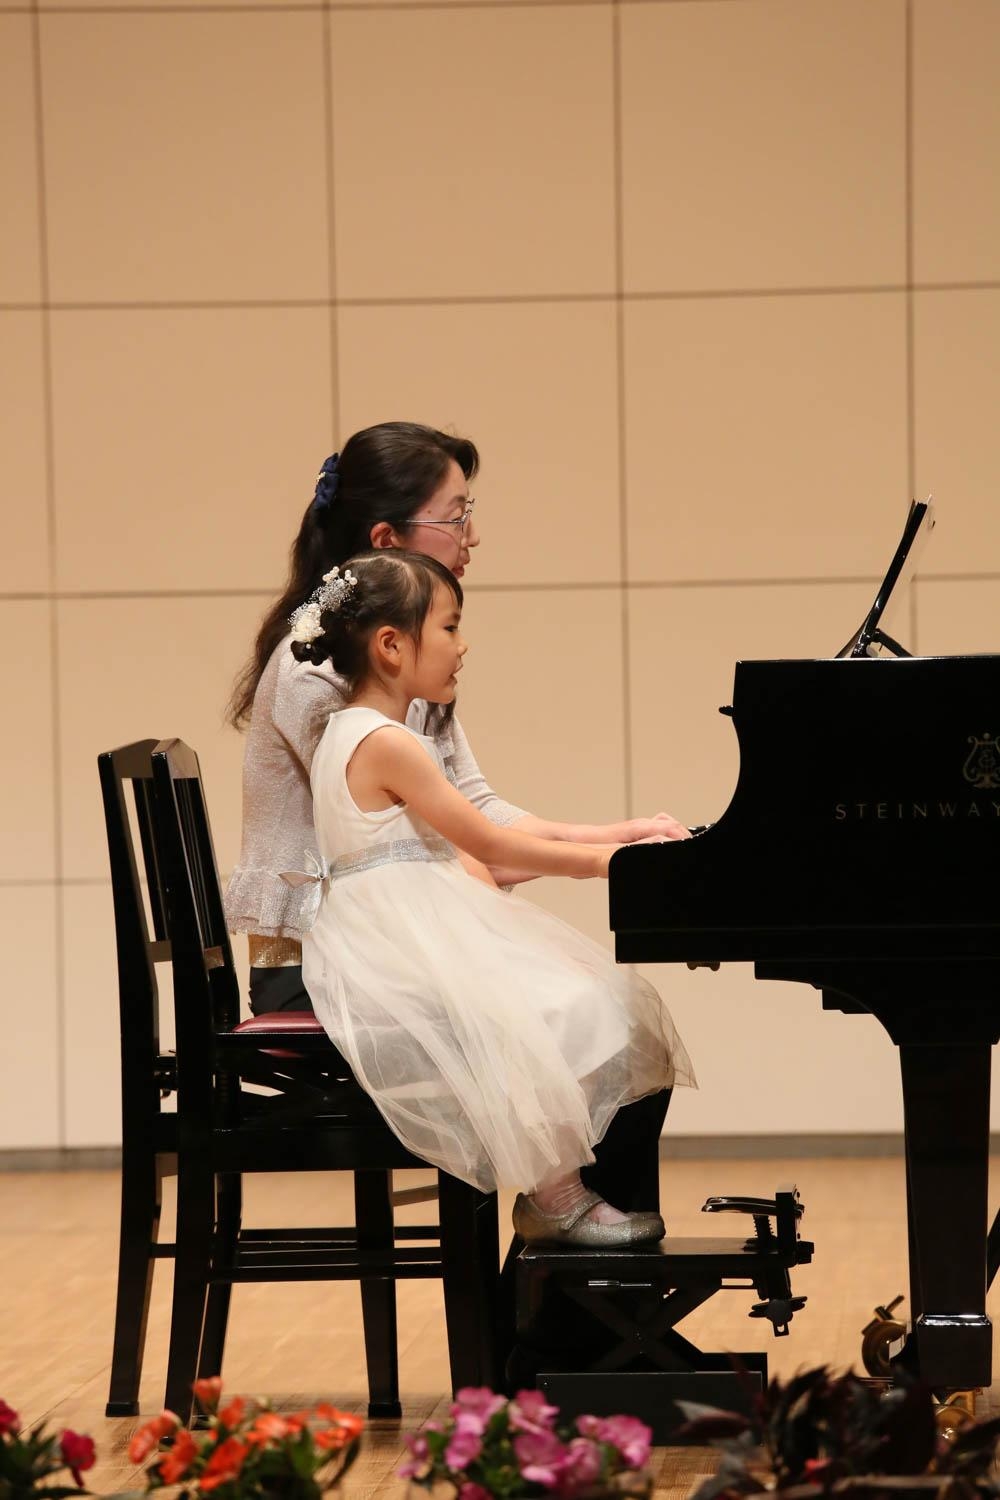 鎌倉アミ音楽教室 ピアノ発表会の様子